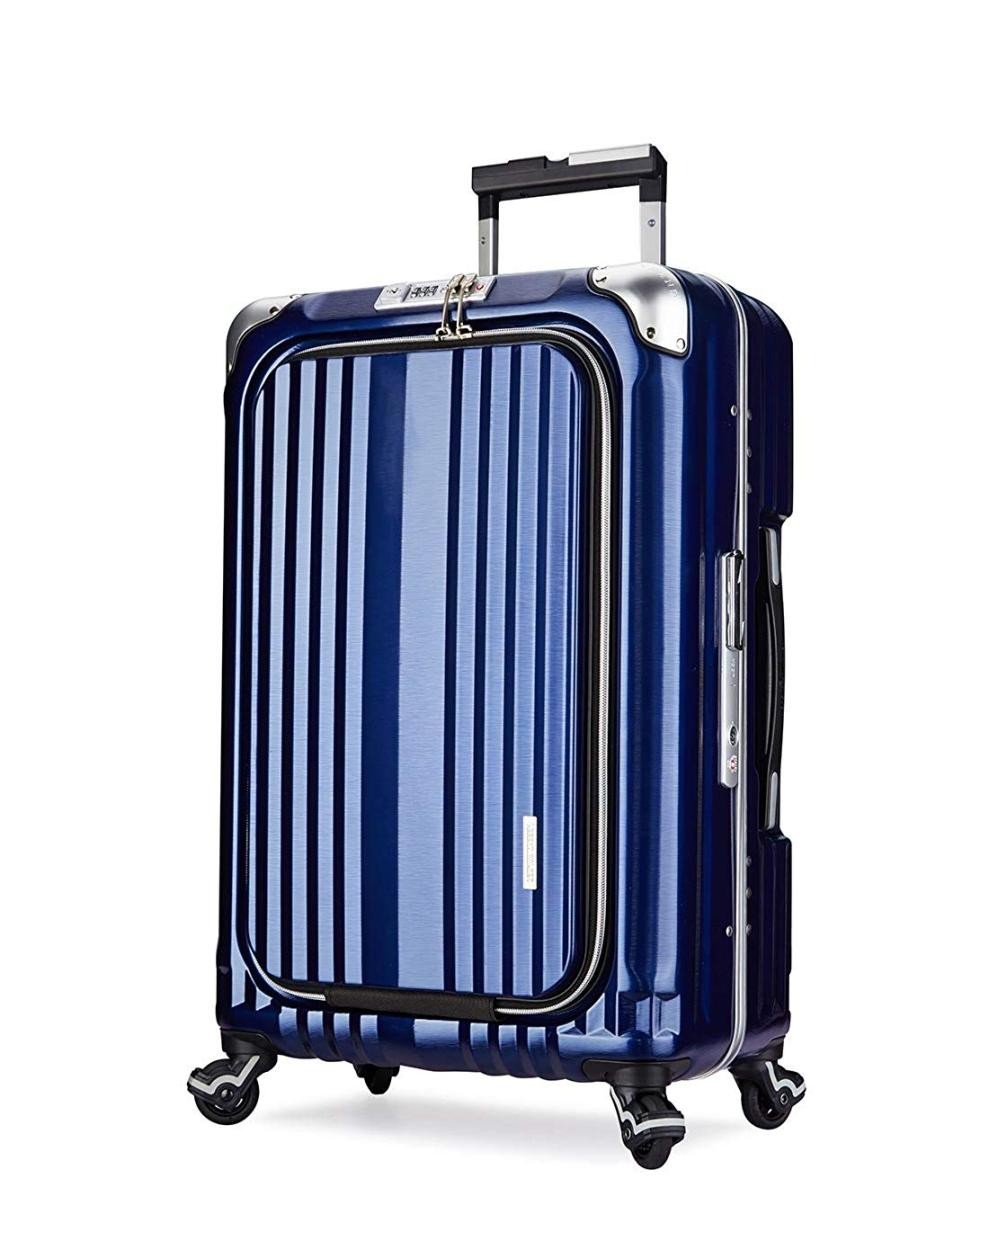 アウトレット スーツケース 中型 軽量 Mサイズ ビジネスキャリー ビジネスバッグ キャリーバッグ キャリーケース PC収納 メンズ B-6603-58